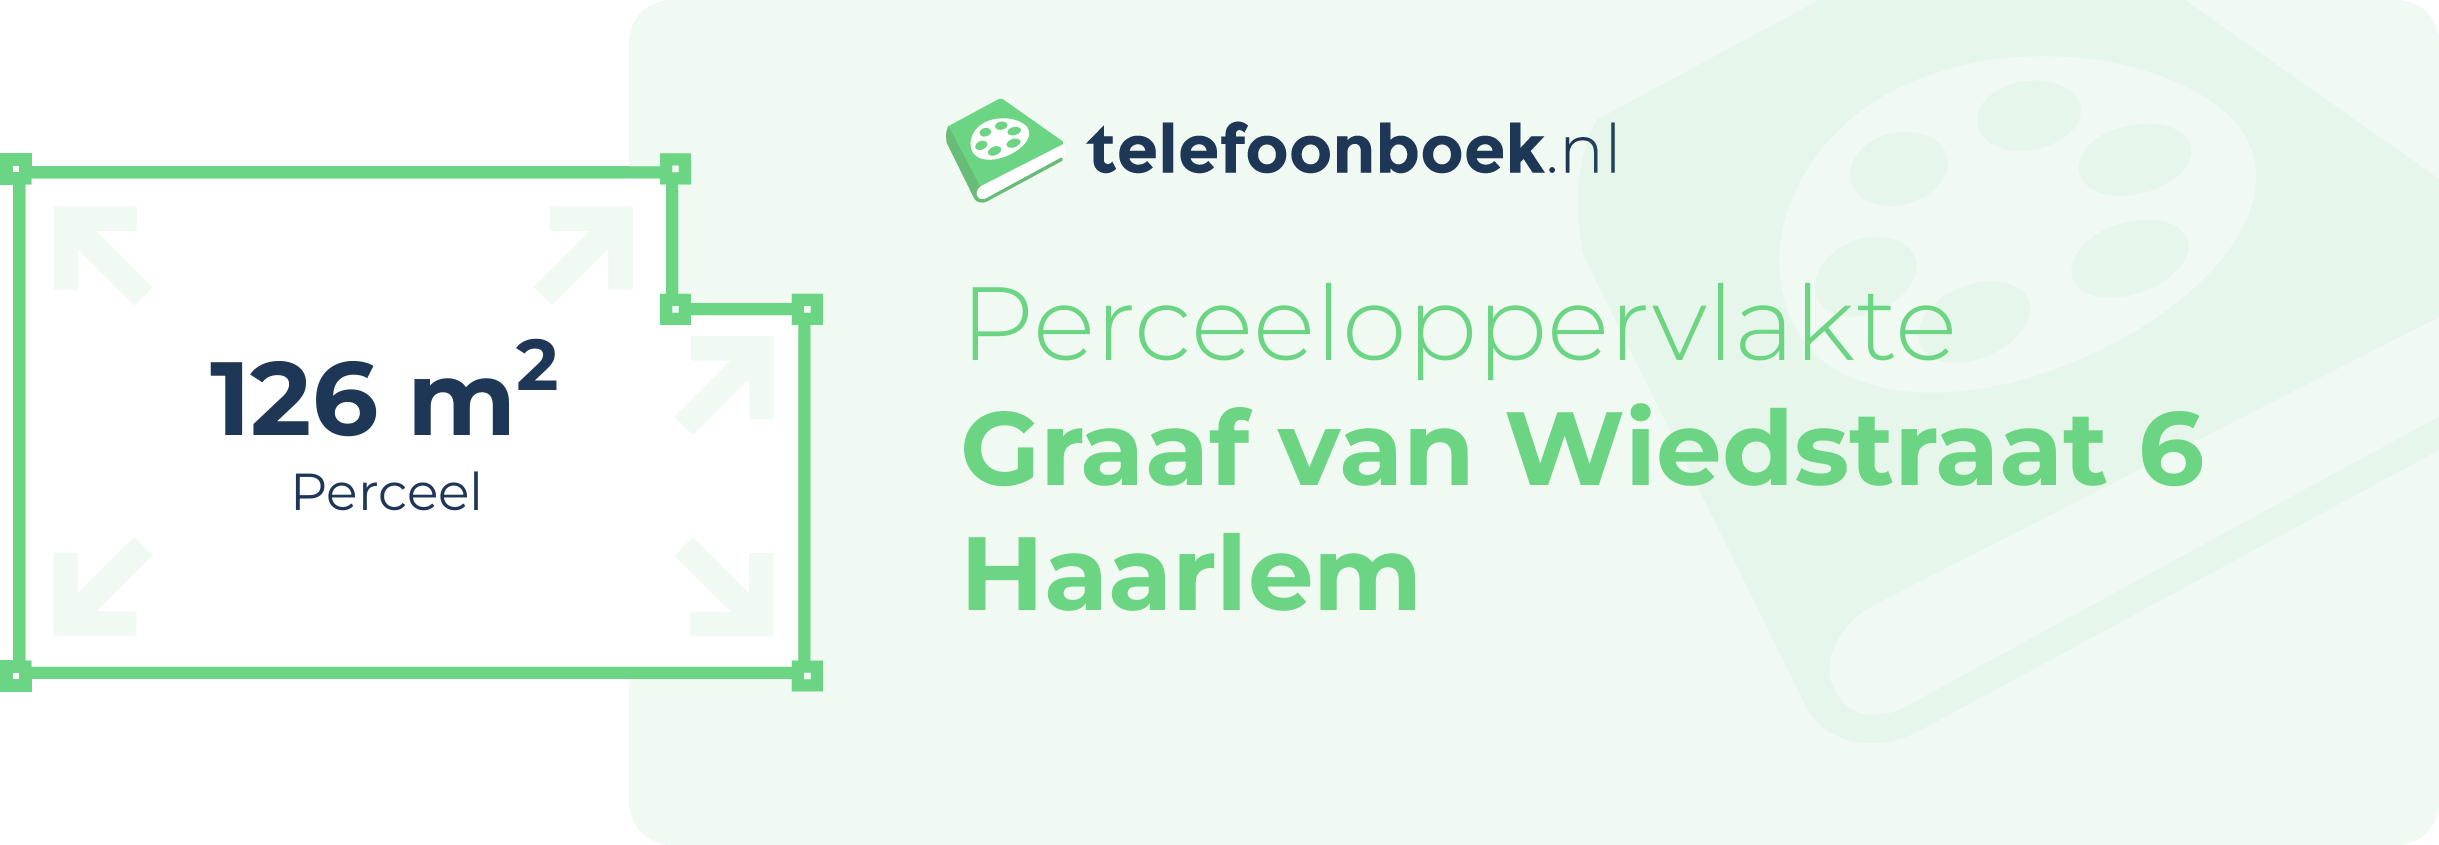 Perceeloppervlakte Graaf Van Wiedstraat 6 Haarlem